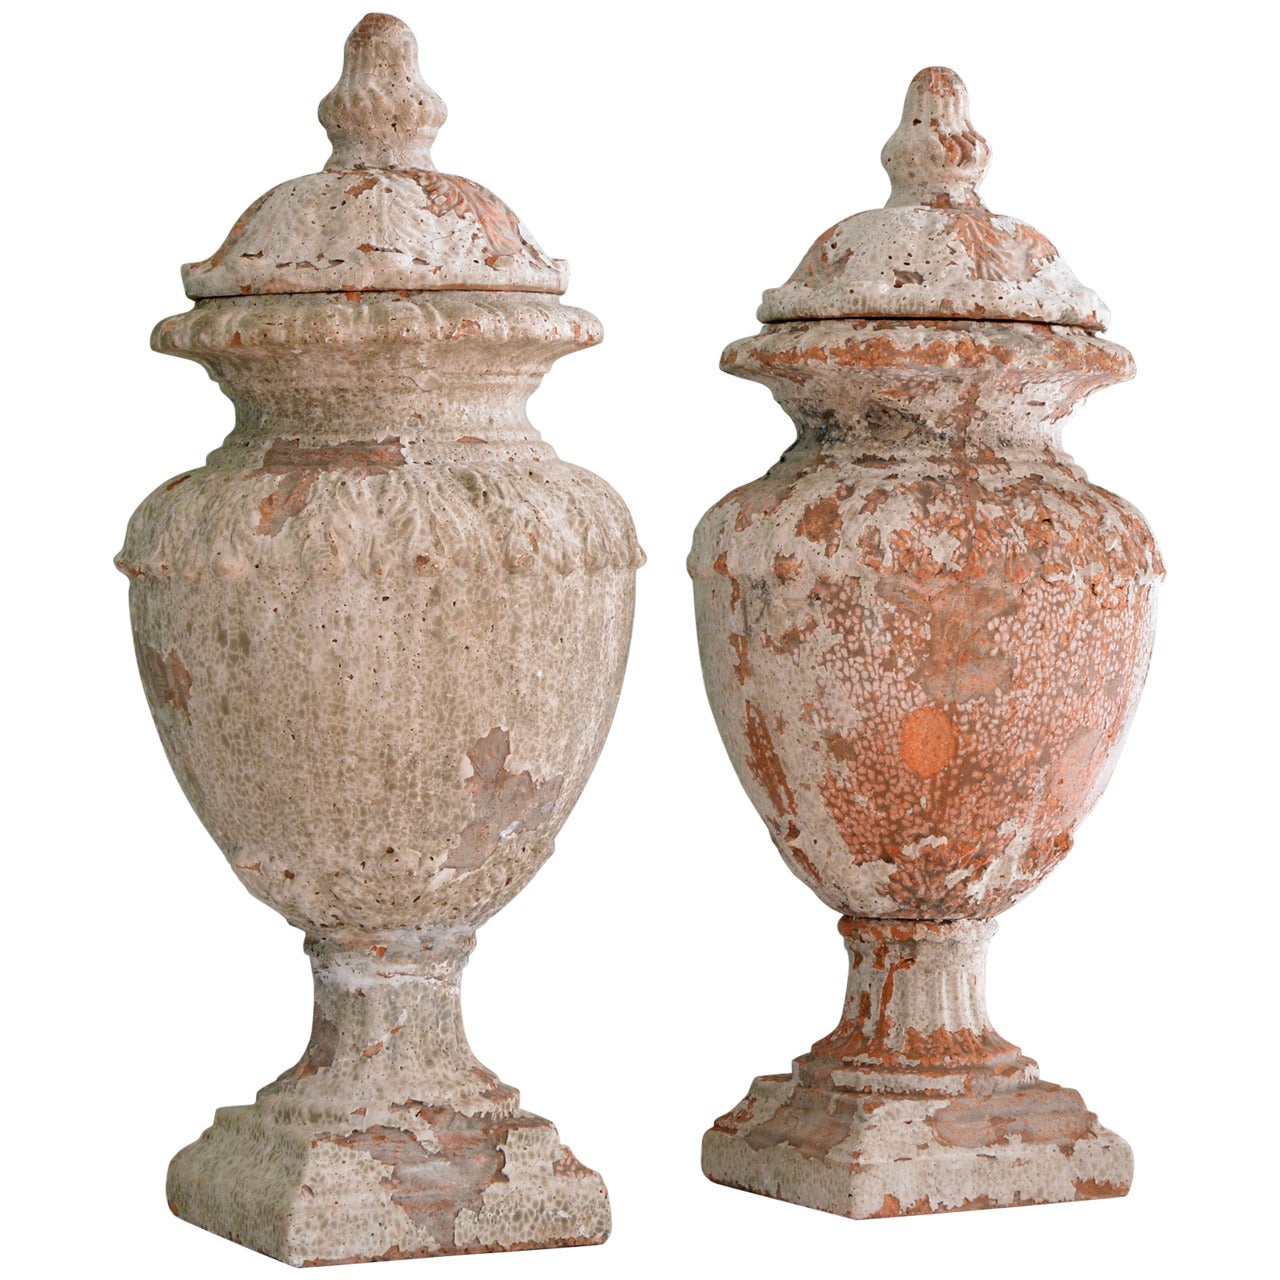 Terracotta Lided Urns